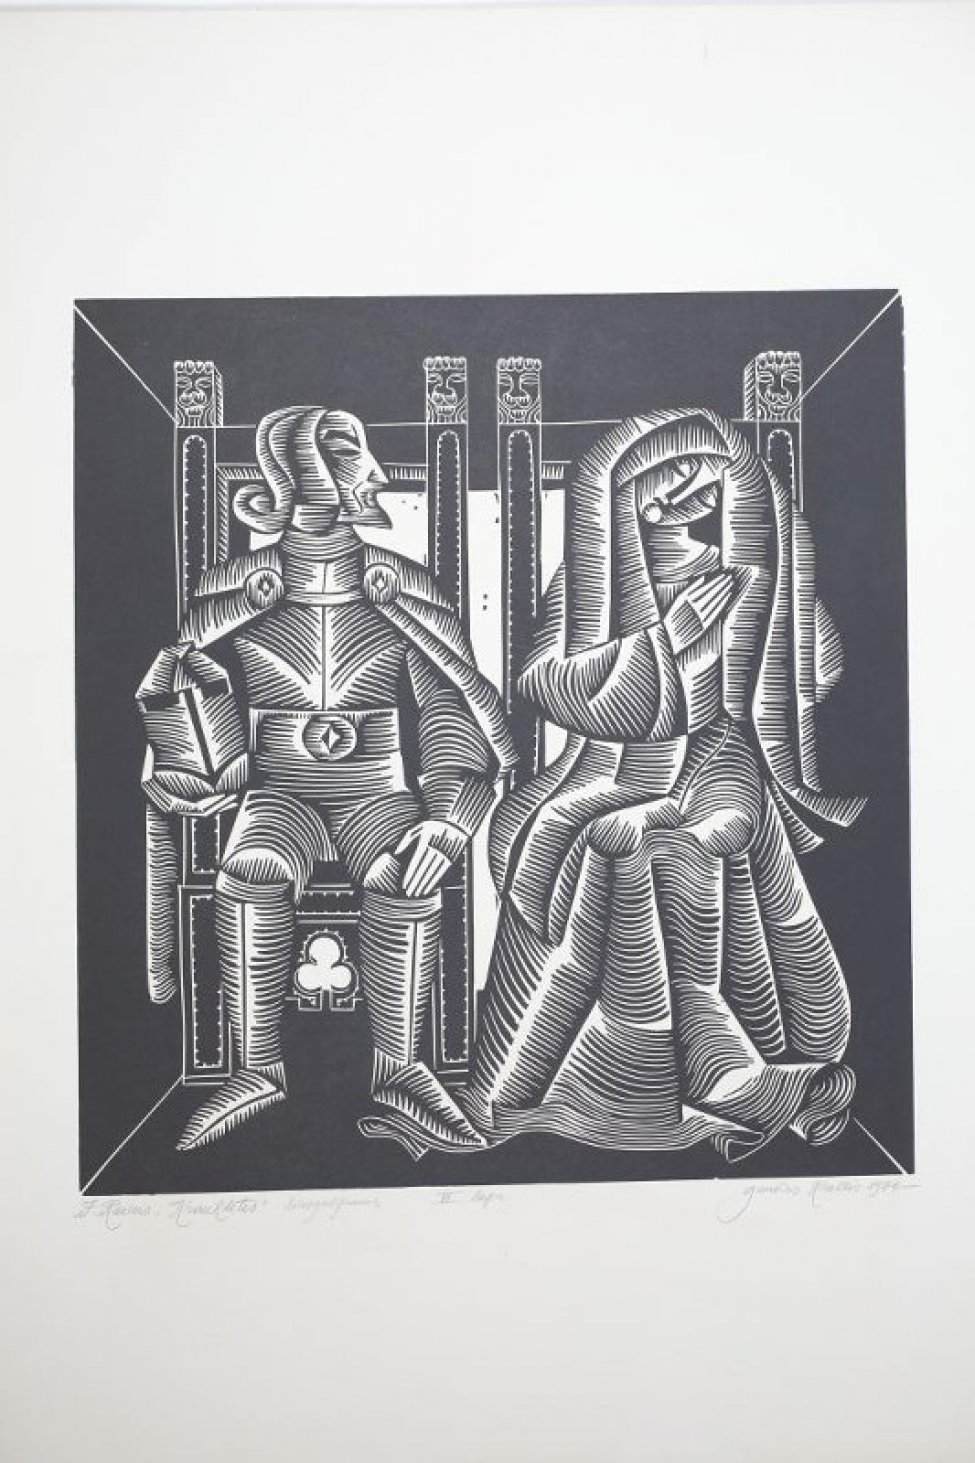 Изображены сидящие на креслах с высокими спинками рыцарь в латах, со шлемом в руке и женщина со склоненной головой.